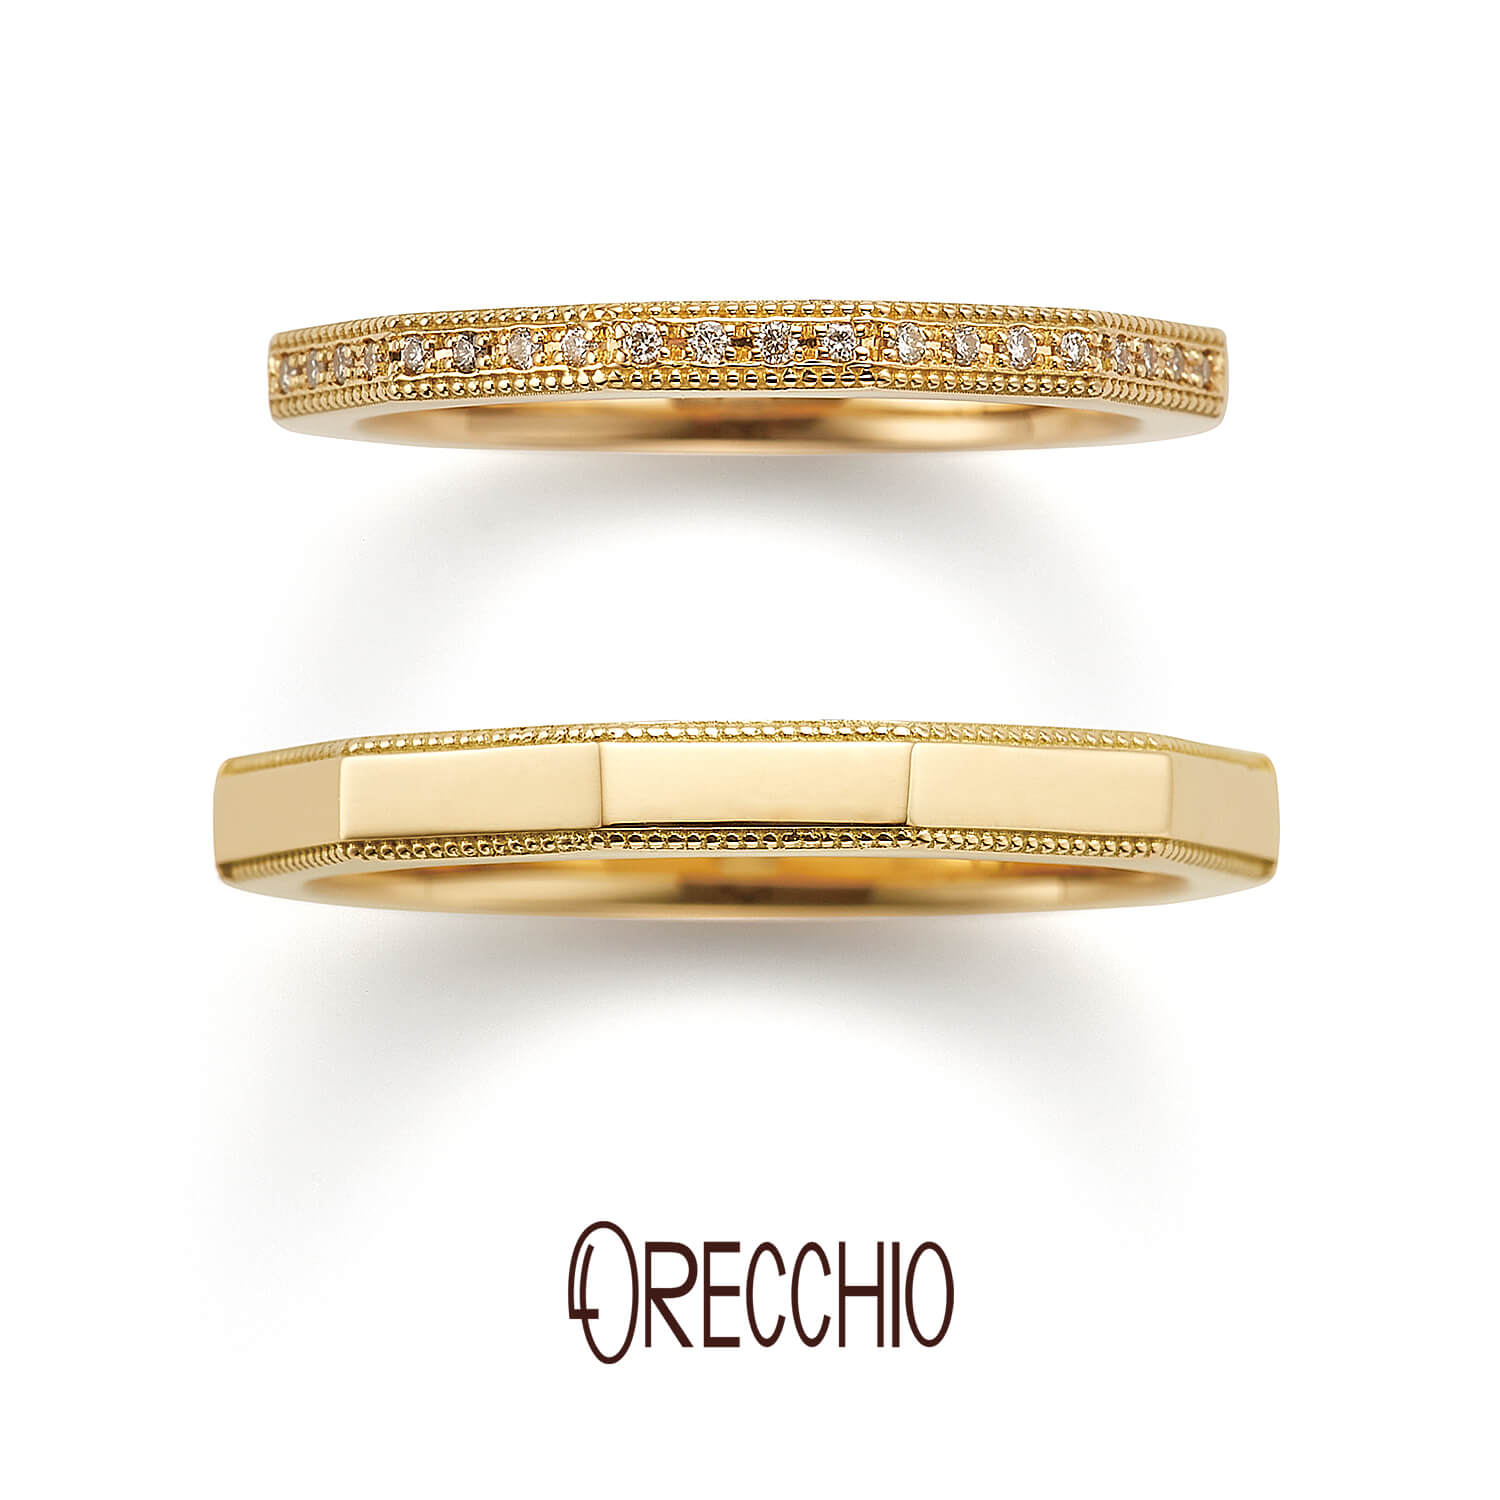 ORECCHIOオレッキオの結婚指輪safariサファリFM-2226とFM-2225